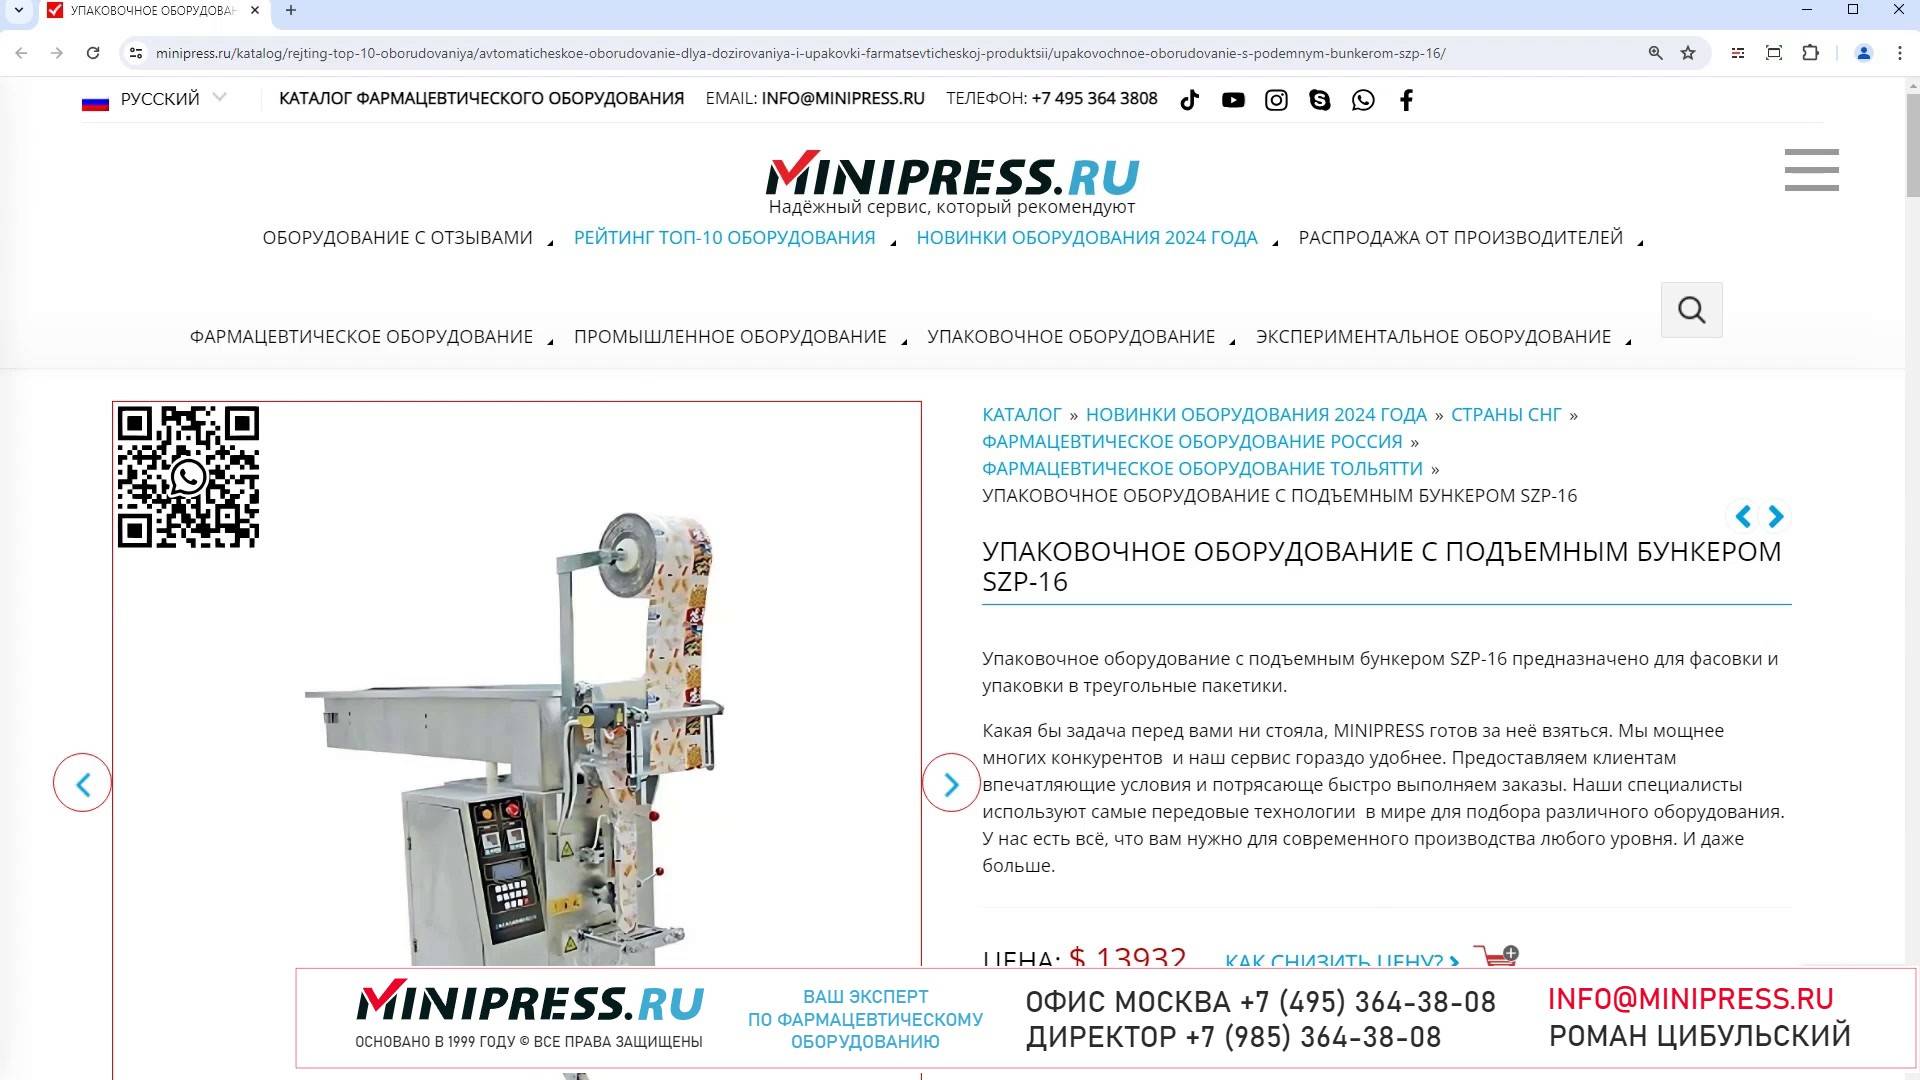 Minipress.ru Упаковочное оборудование с подъемным бункером SZP-16